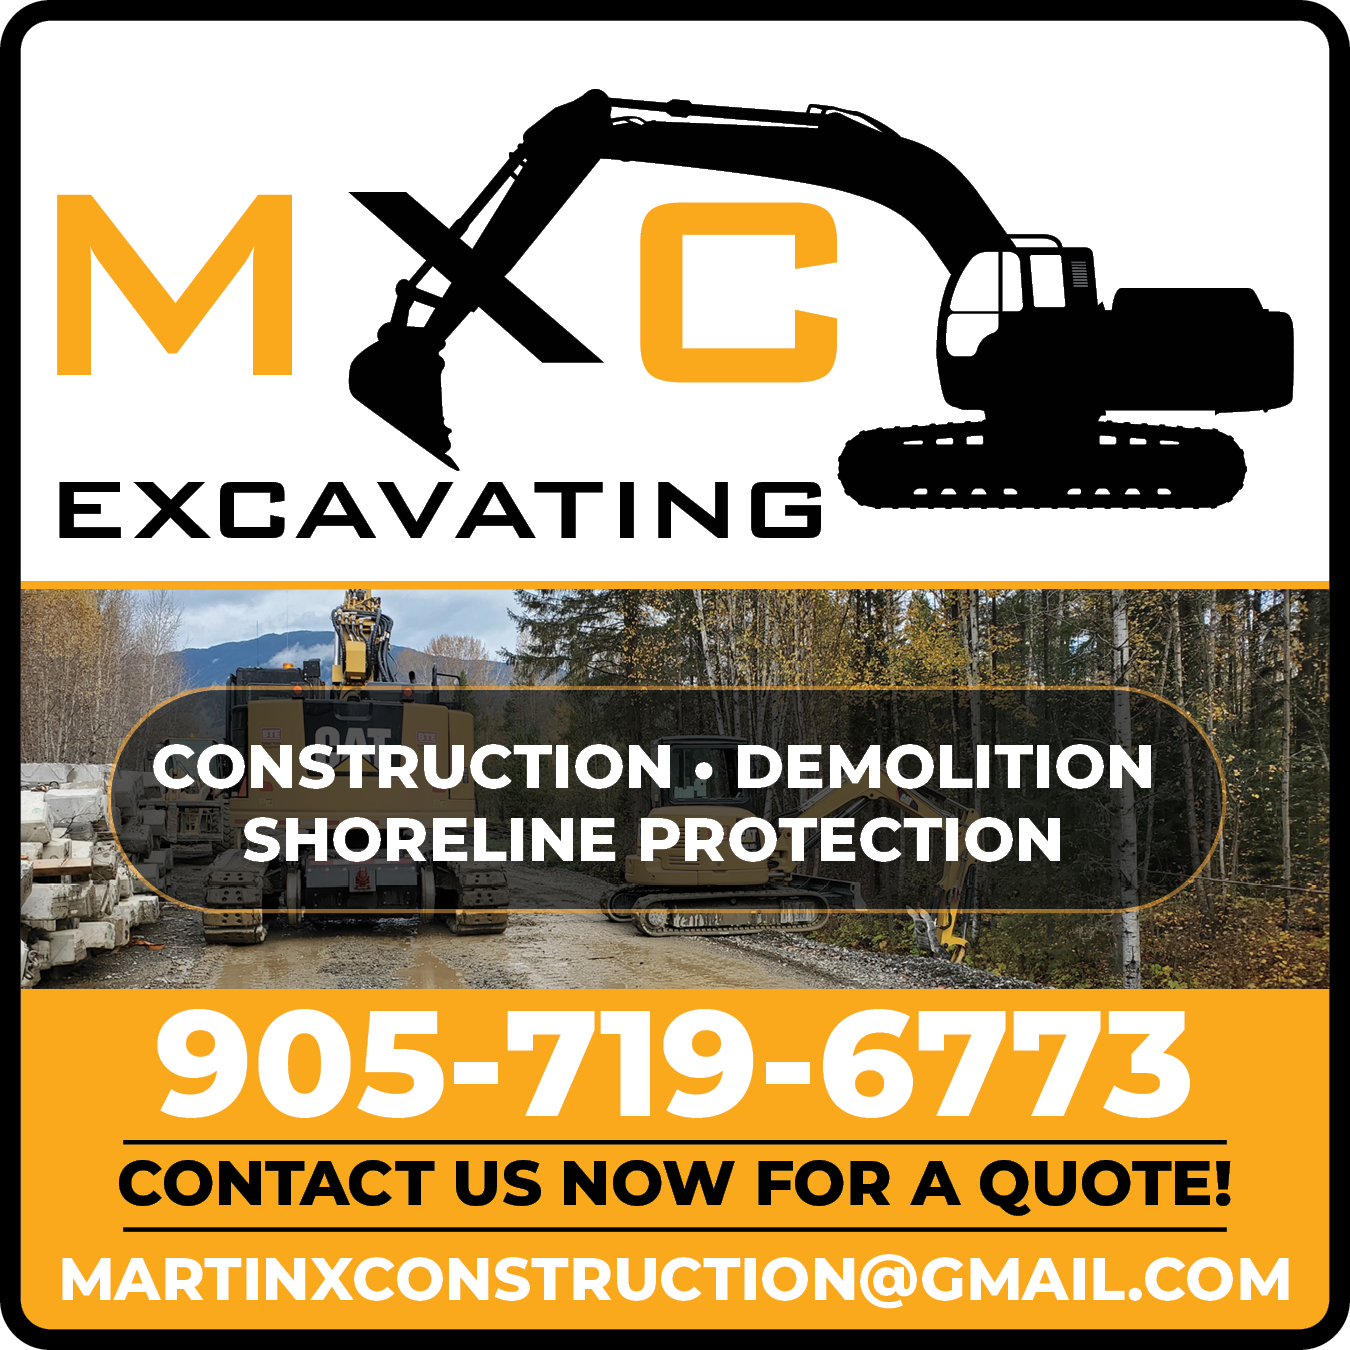 MXC Excavating